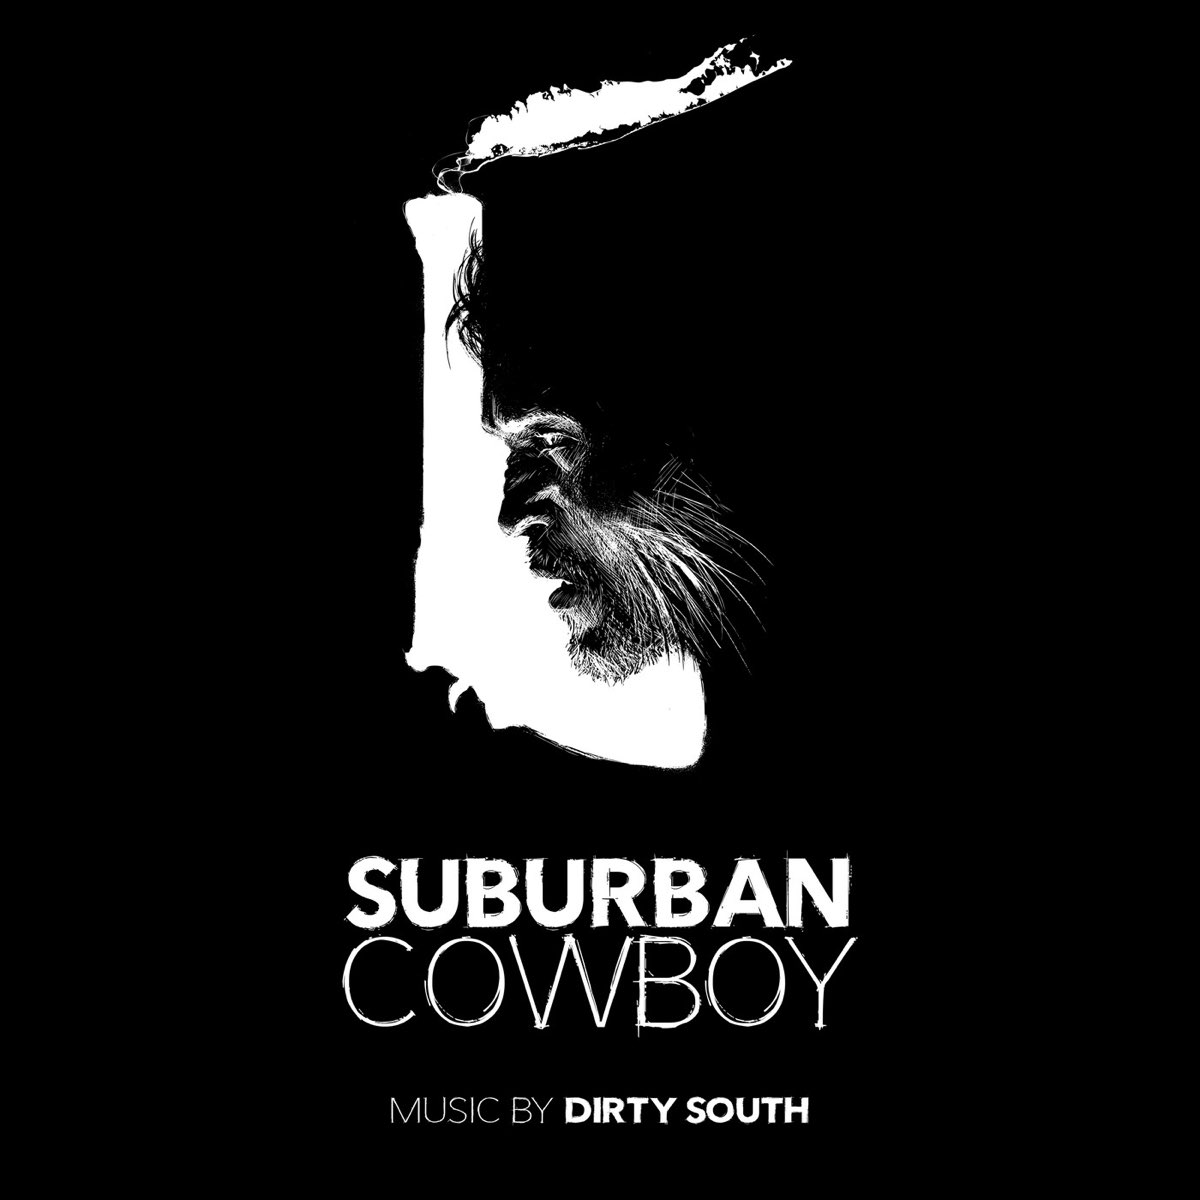 Suburban Music. Dirty South музыка. Suburban обложки треков. Sub Urban обложка альбома. Песня наггетс ковбой оригинал